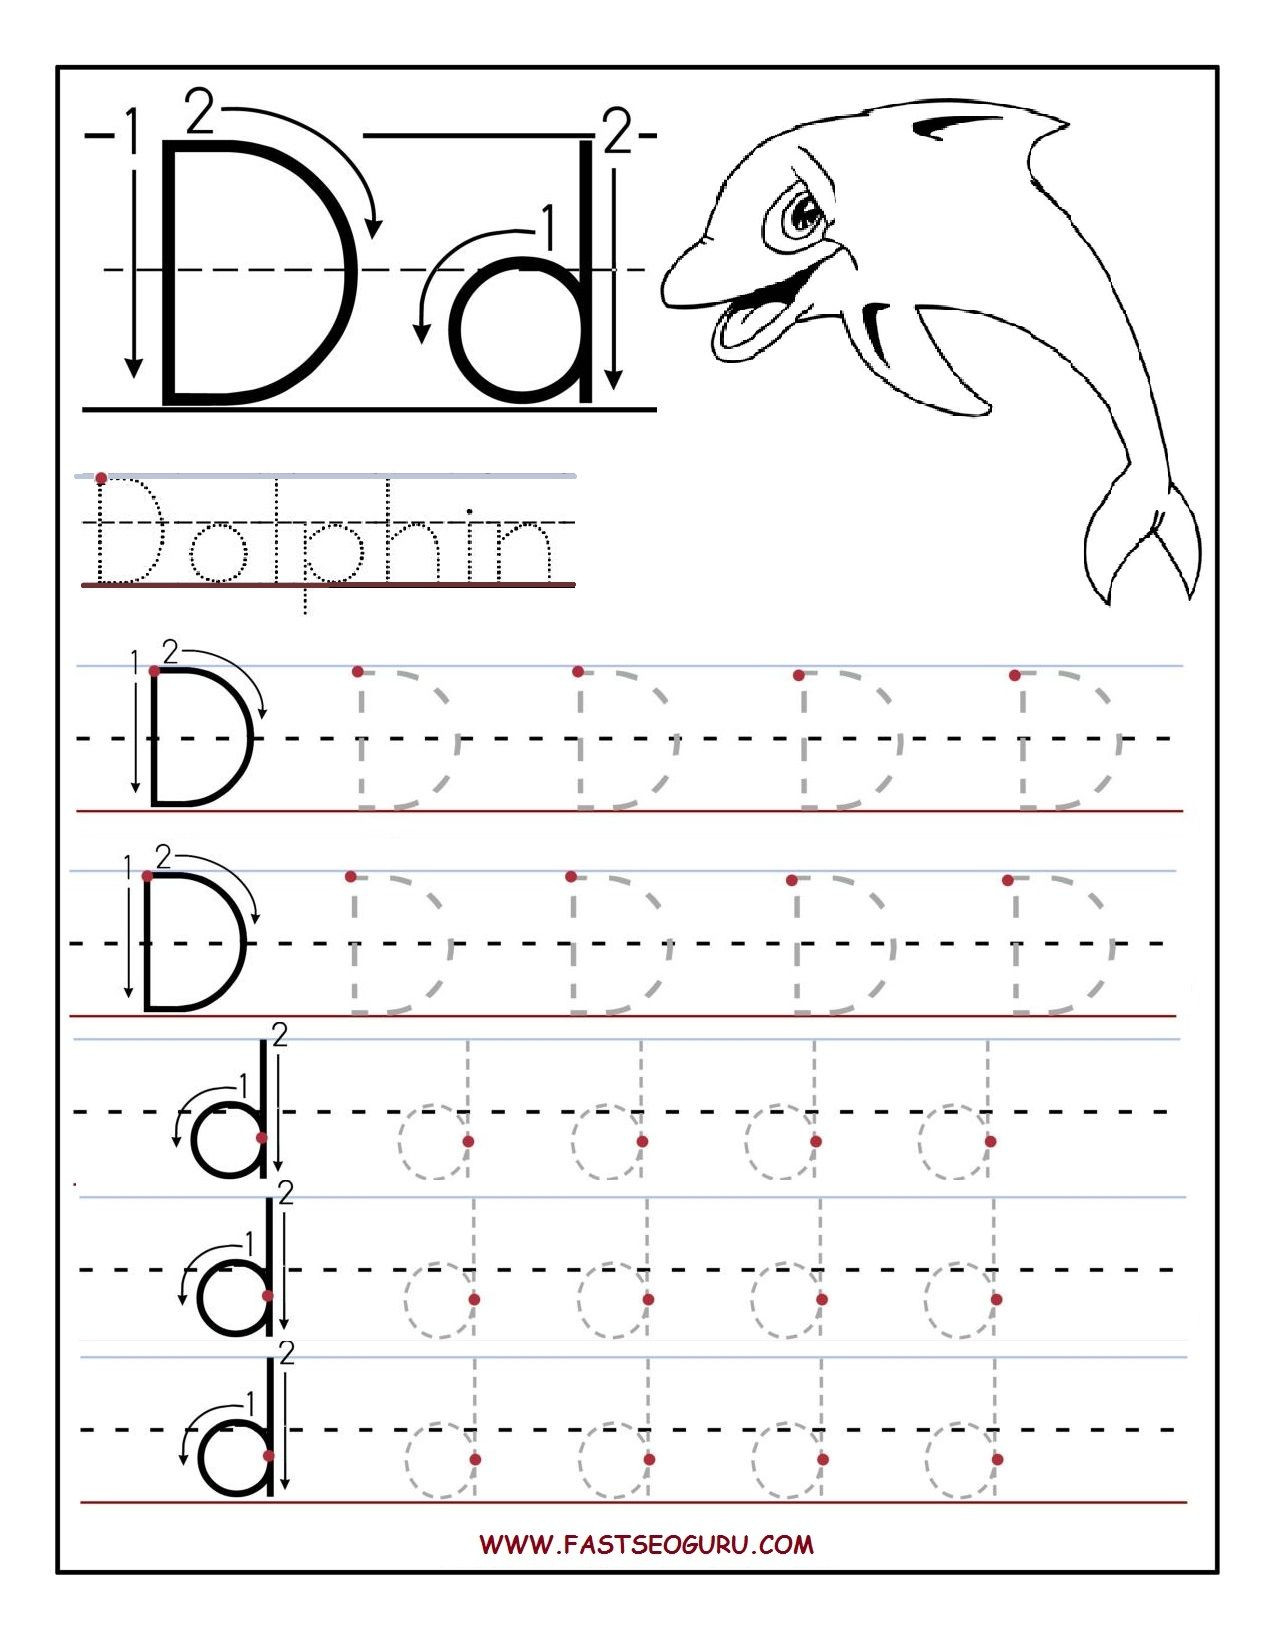 Letter D Worksheet for Preschool Preschool Alphabet Worksheets Printables Printable Letter A